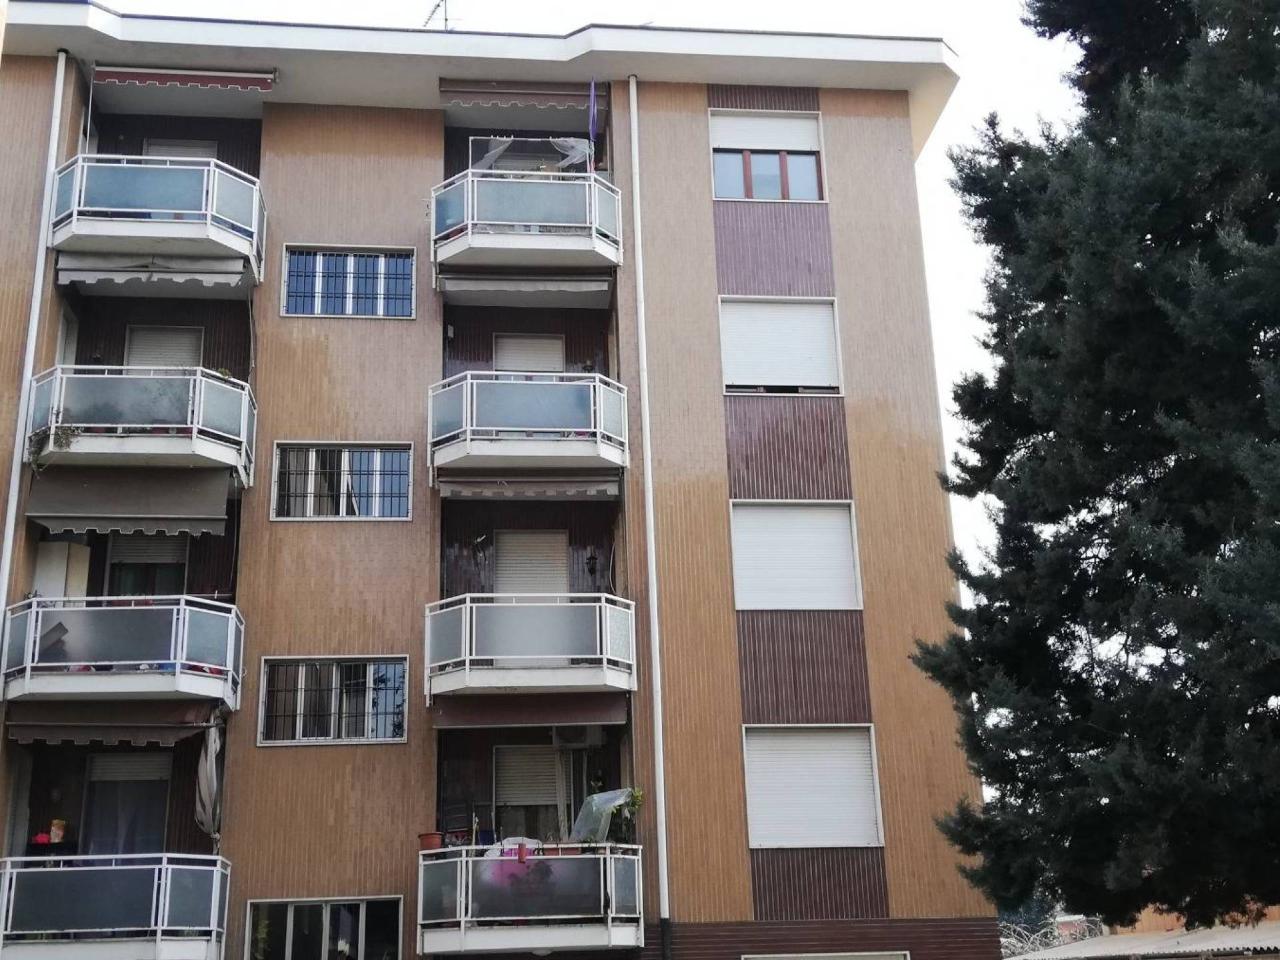 Appartamento in vendita a Sedriano